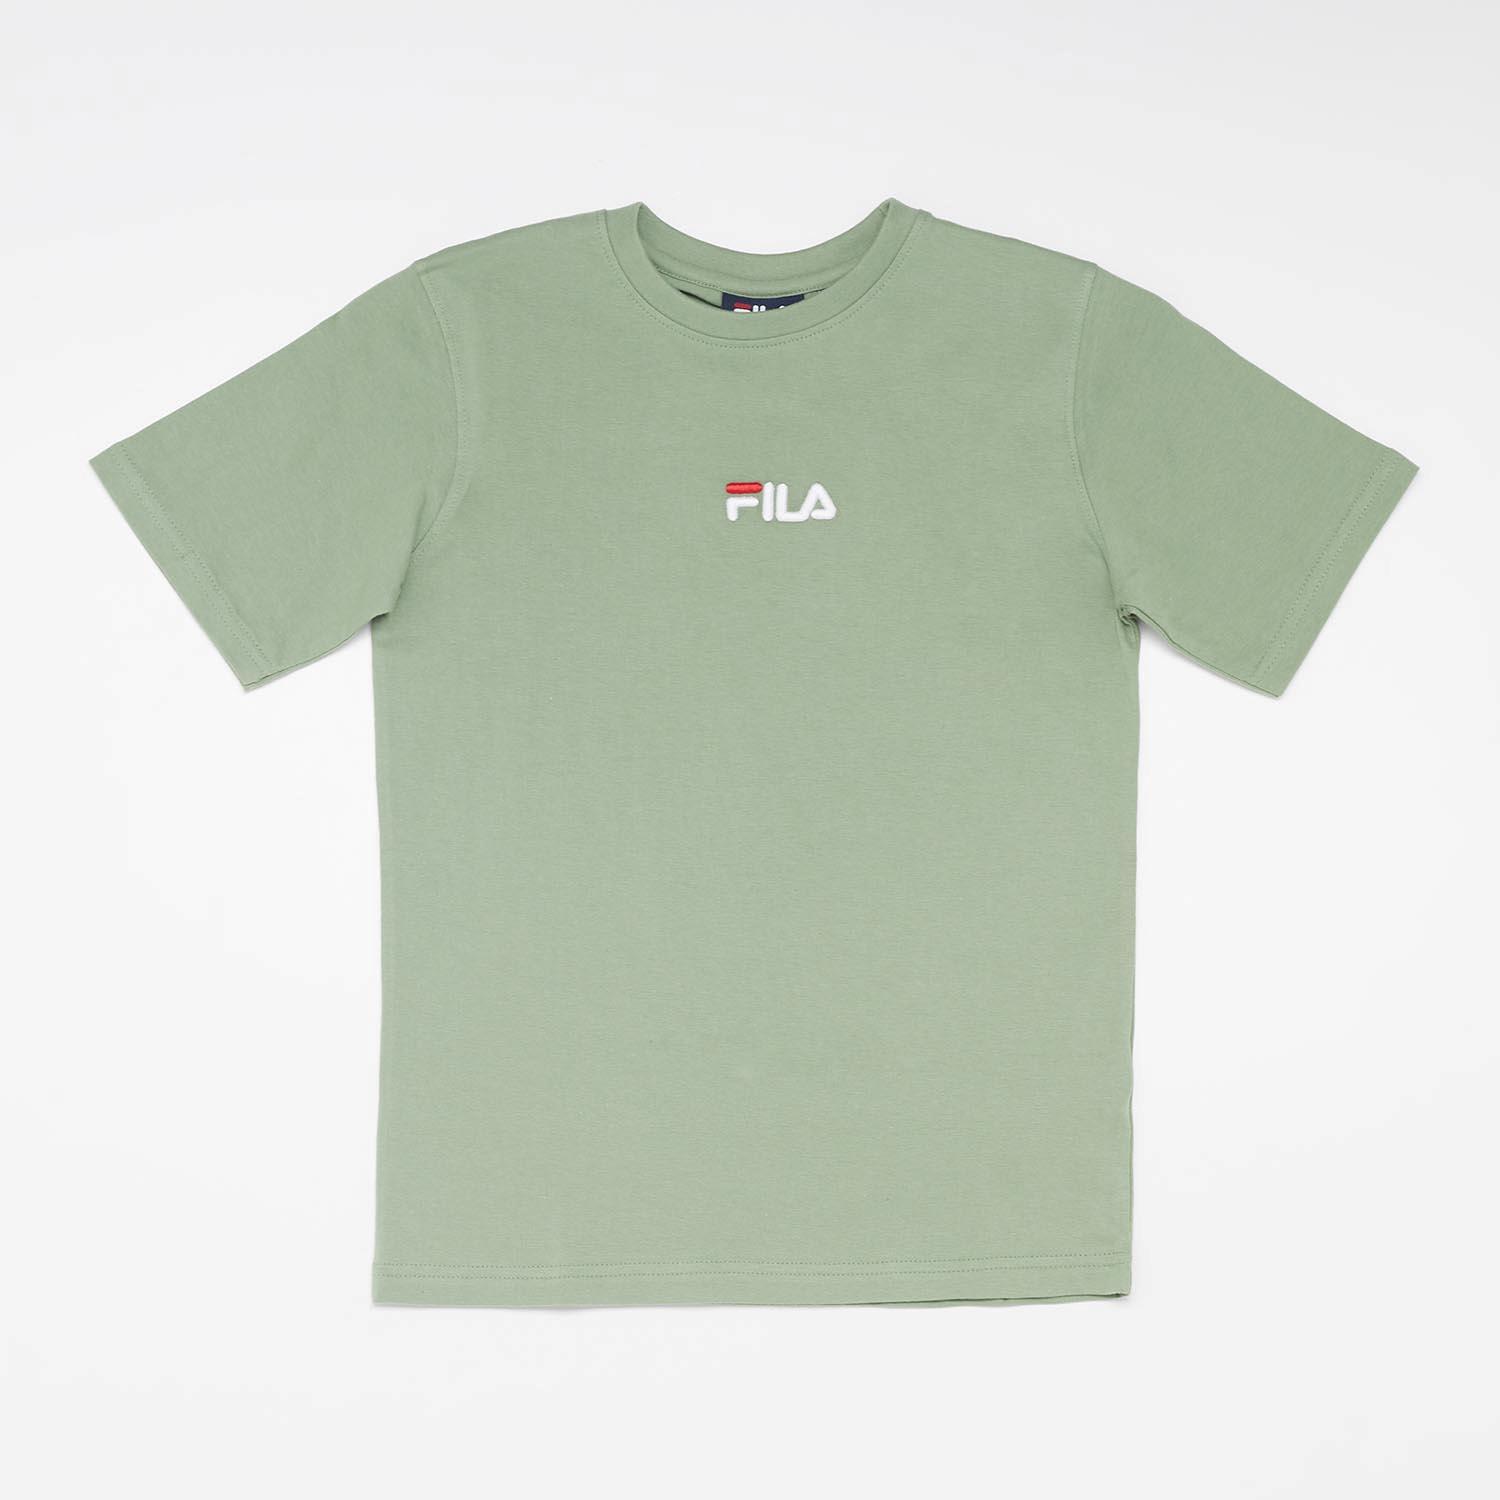 Fila Caiden Jr Camiseta M c Alg Excl